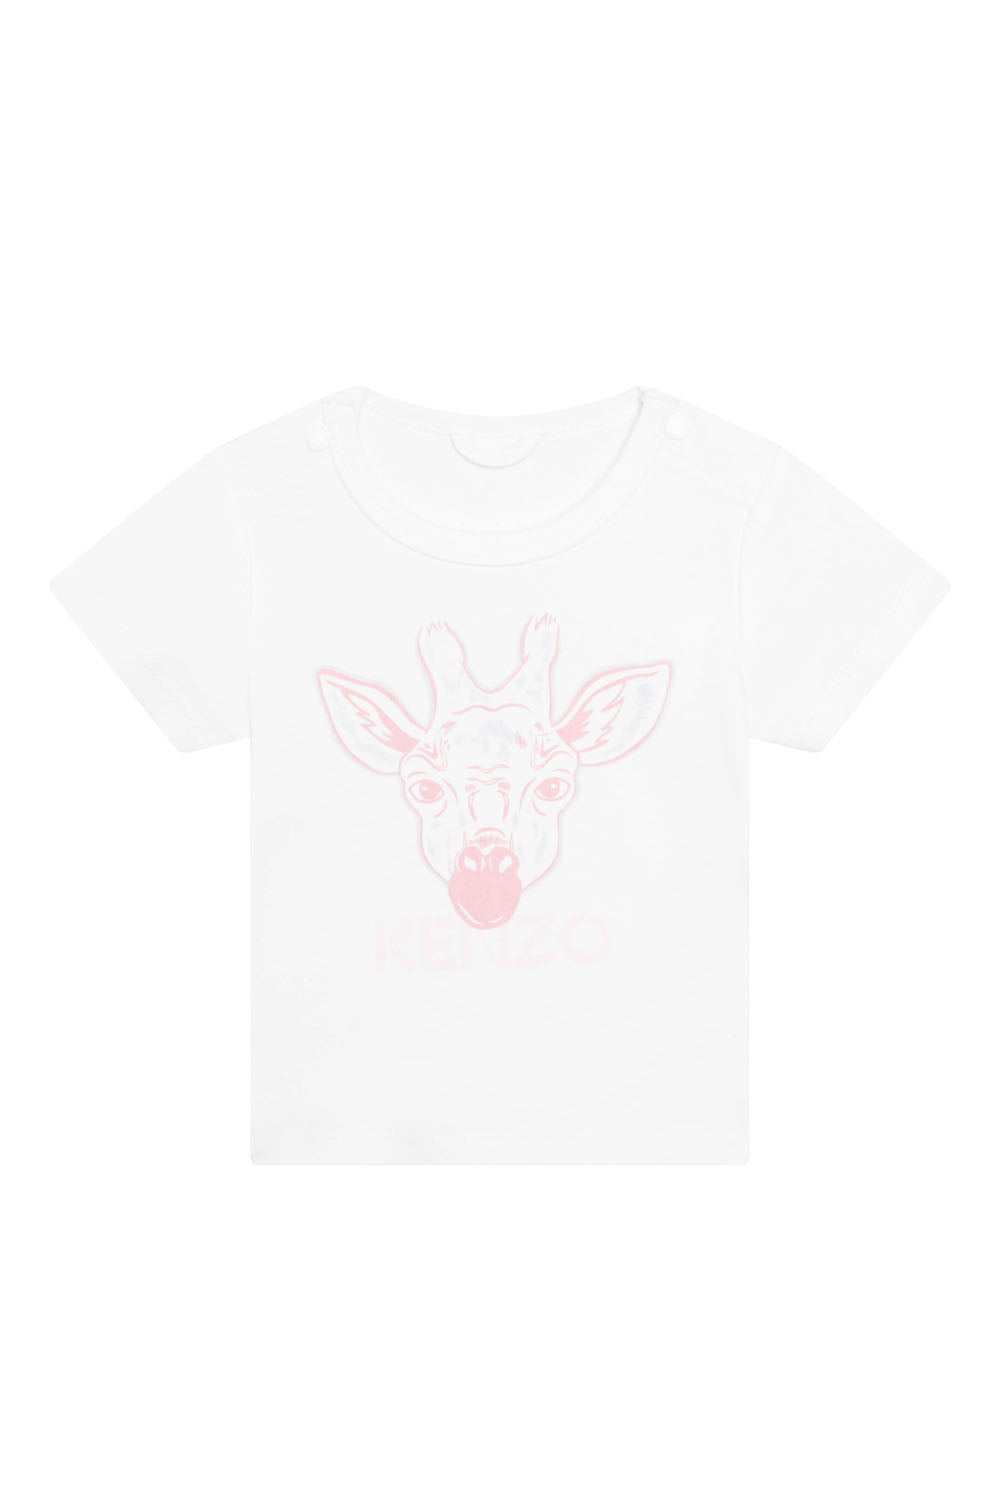 Giraffe Print Short Sleeves T-Shirt for Girls Giraffe Print Short Sleeves T-Shirt for Girls Maison7